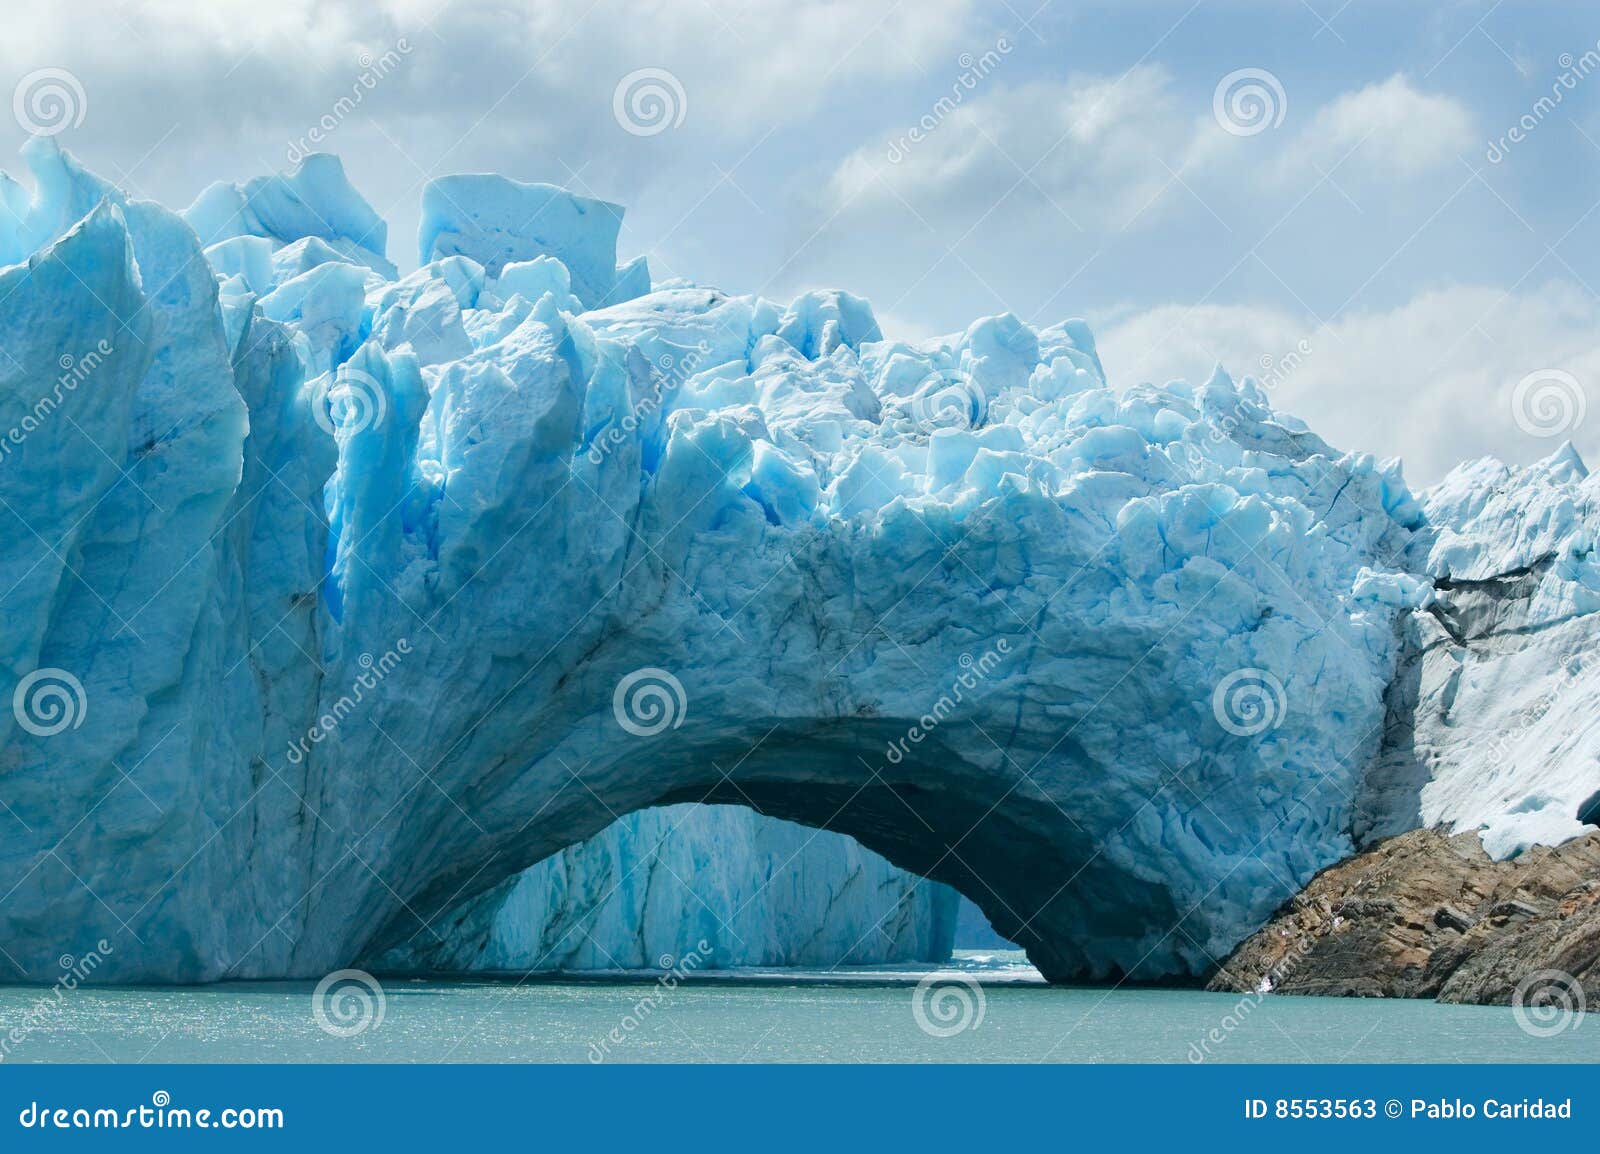 view of the perito moreno glacier, argentina.